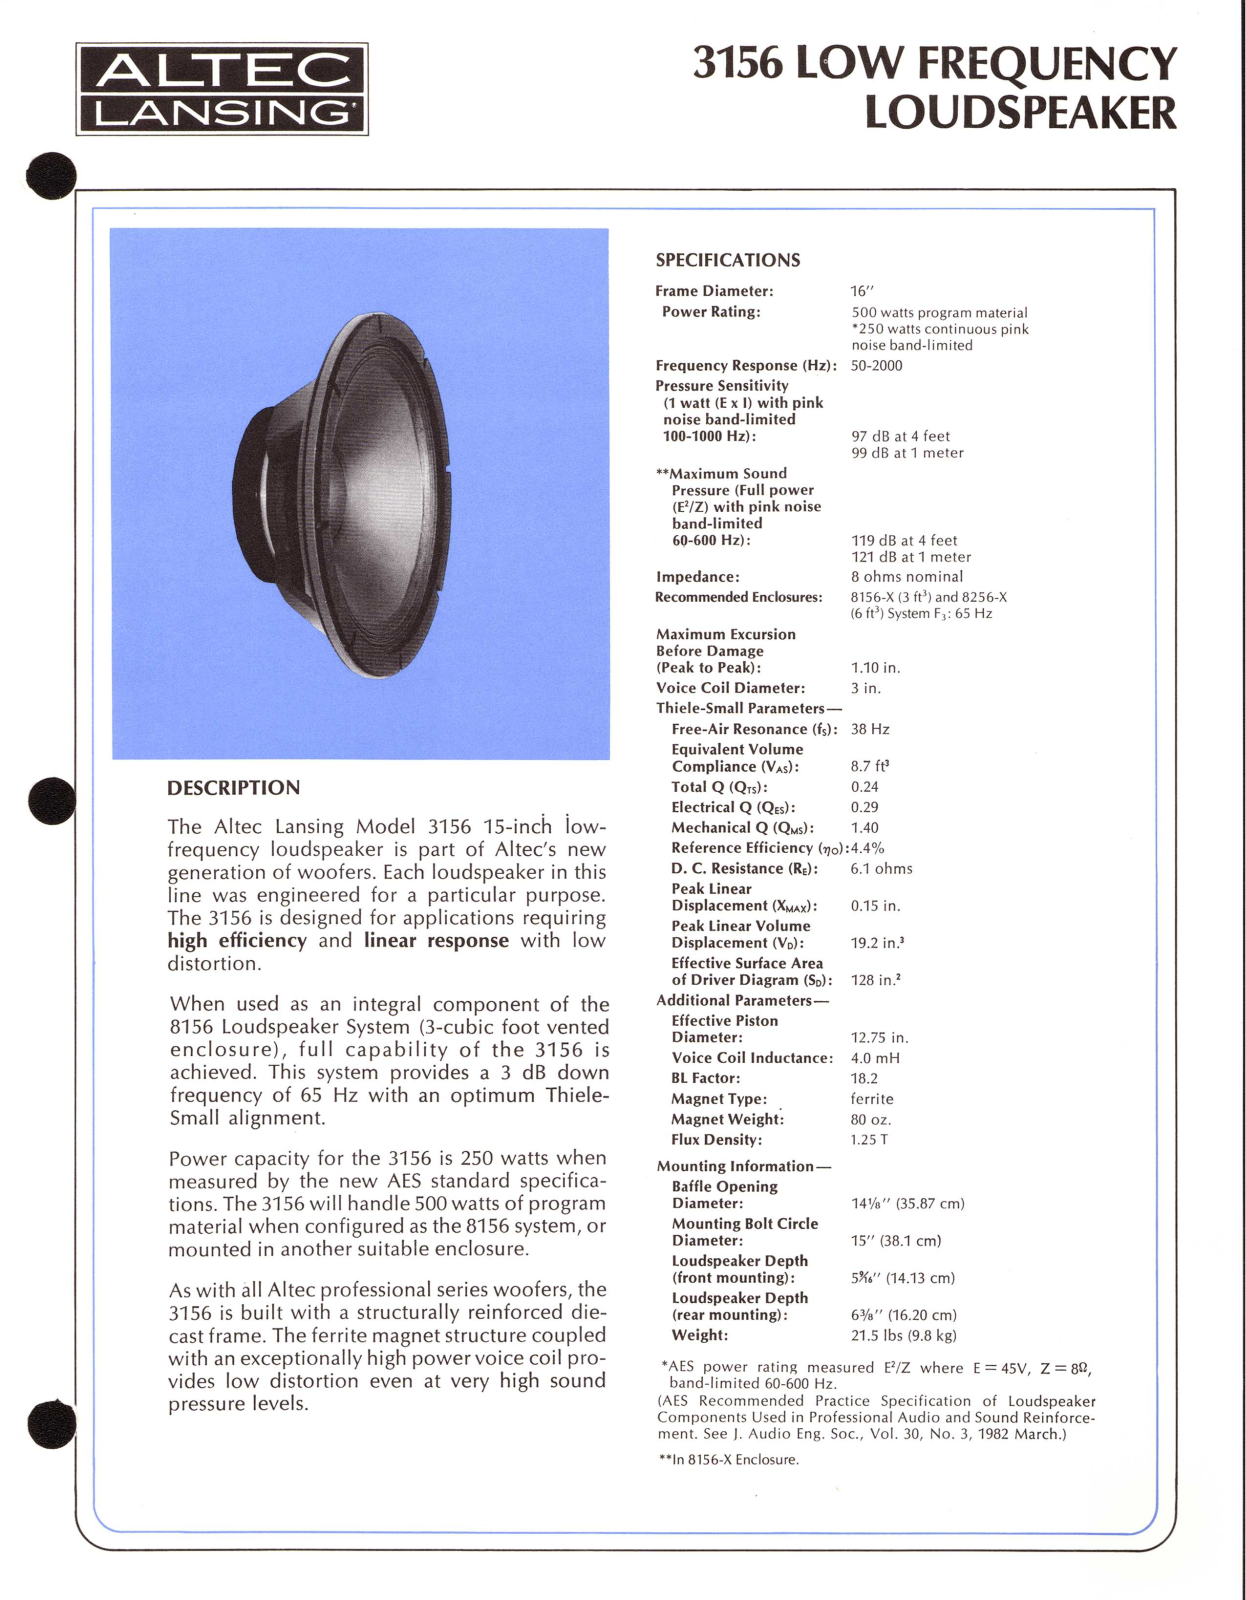 Altec lansing 3156 User Manual